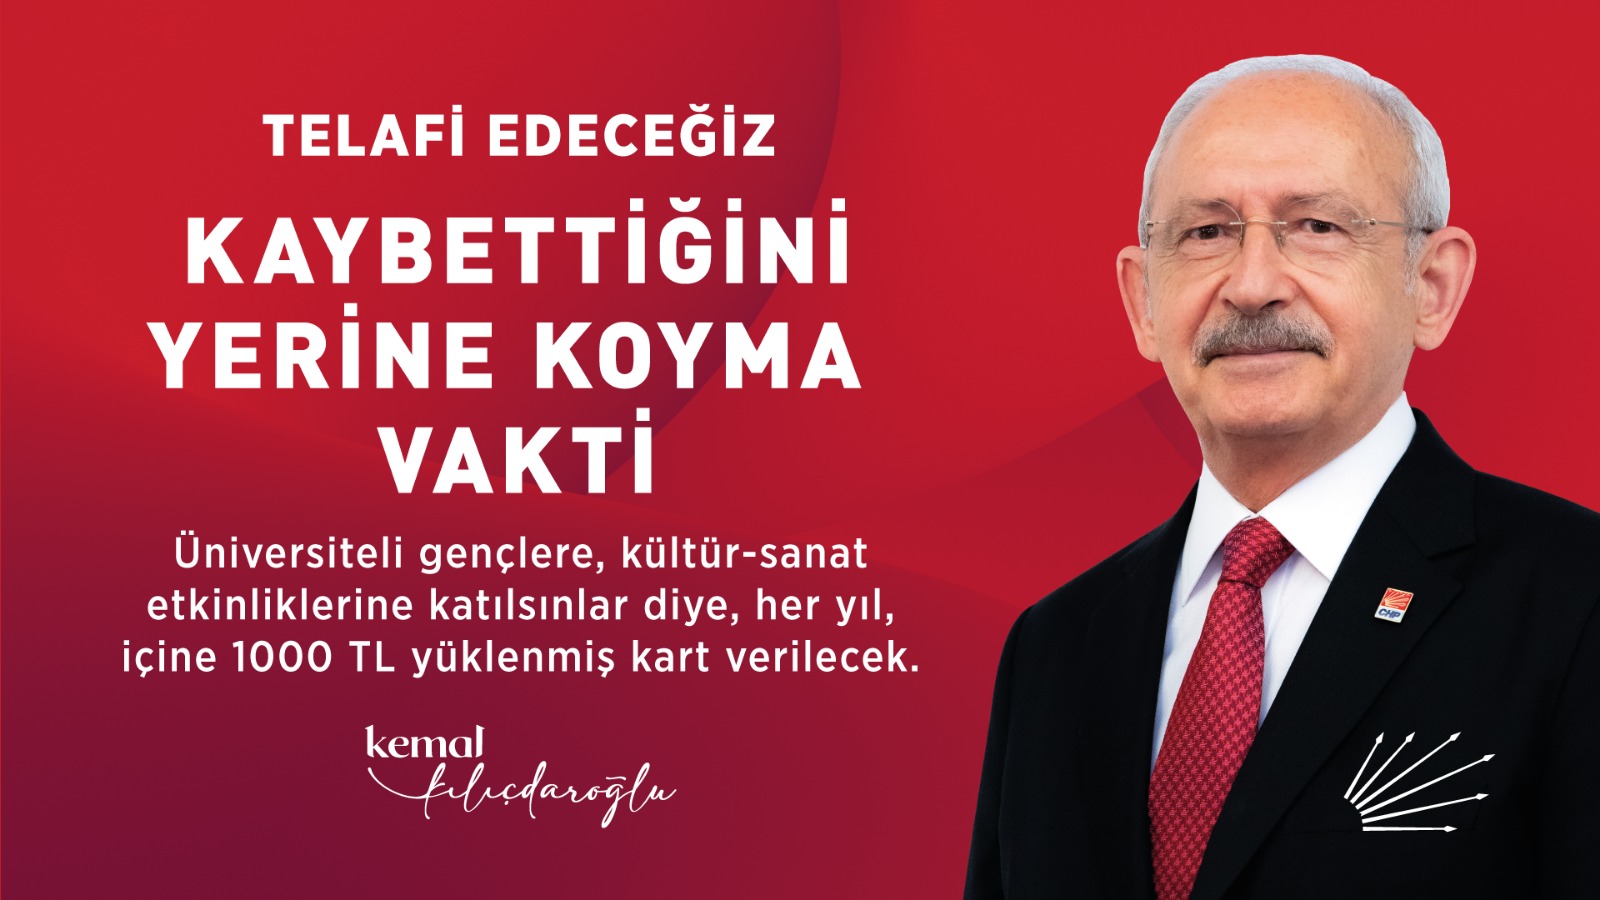 Kılıçdaroğlu’nun gençliğe vaatleri billboardlara taşındı: Kaybettiğini yerine koyma vakti